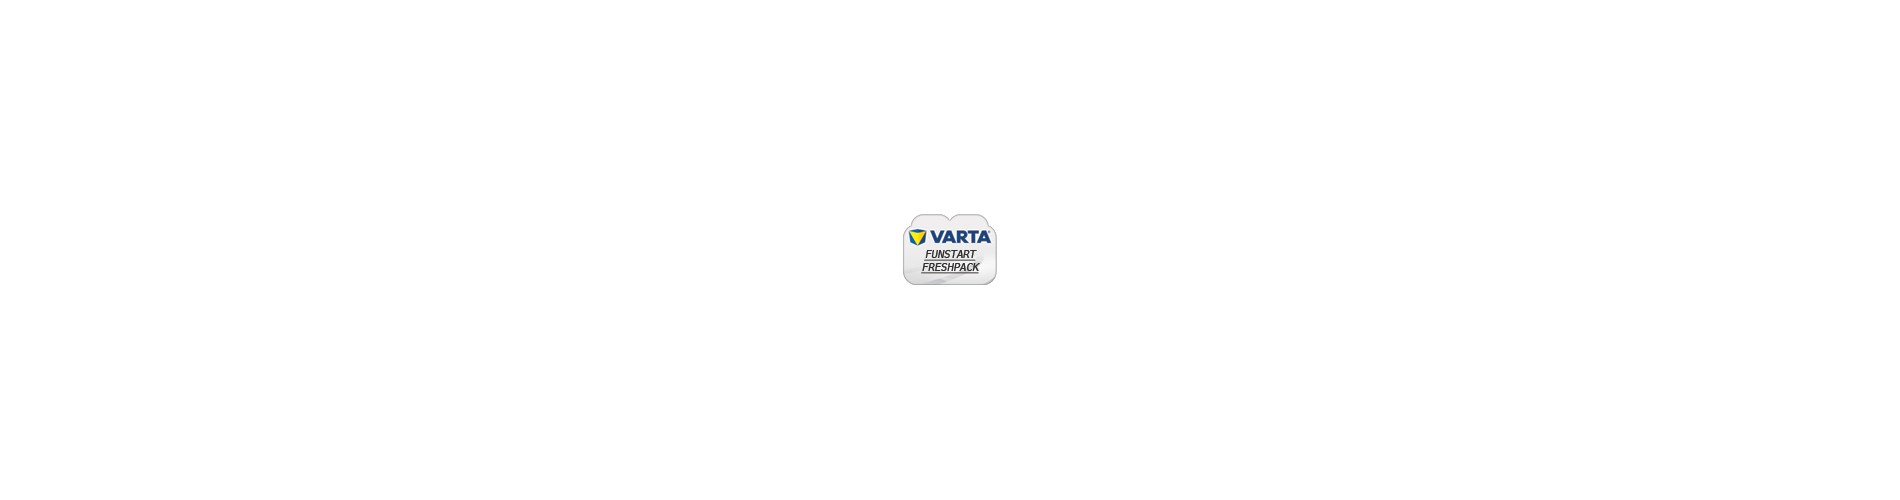 VARTA FUNSTART FRESHPACK batteries